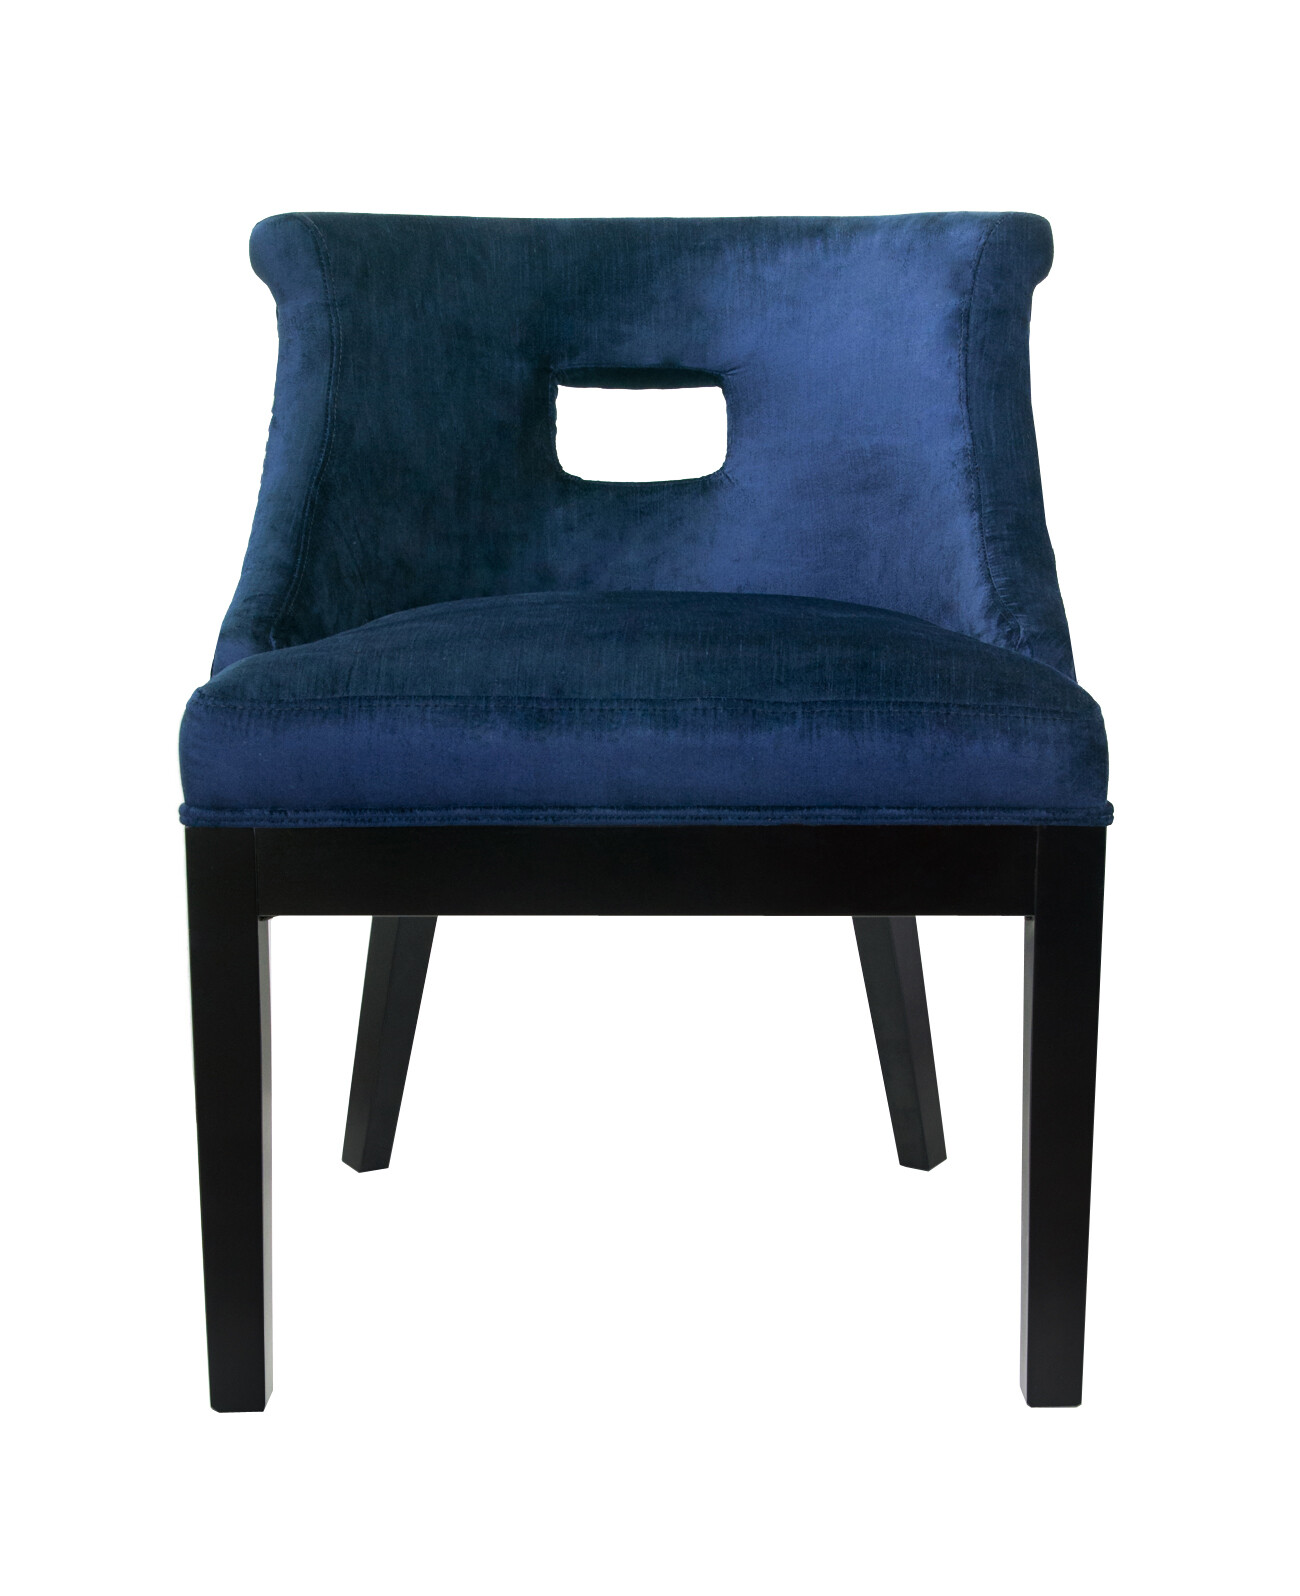 Кресло мягкое с деревянным ножками синее Chamberlain